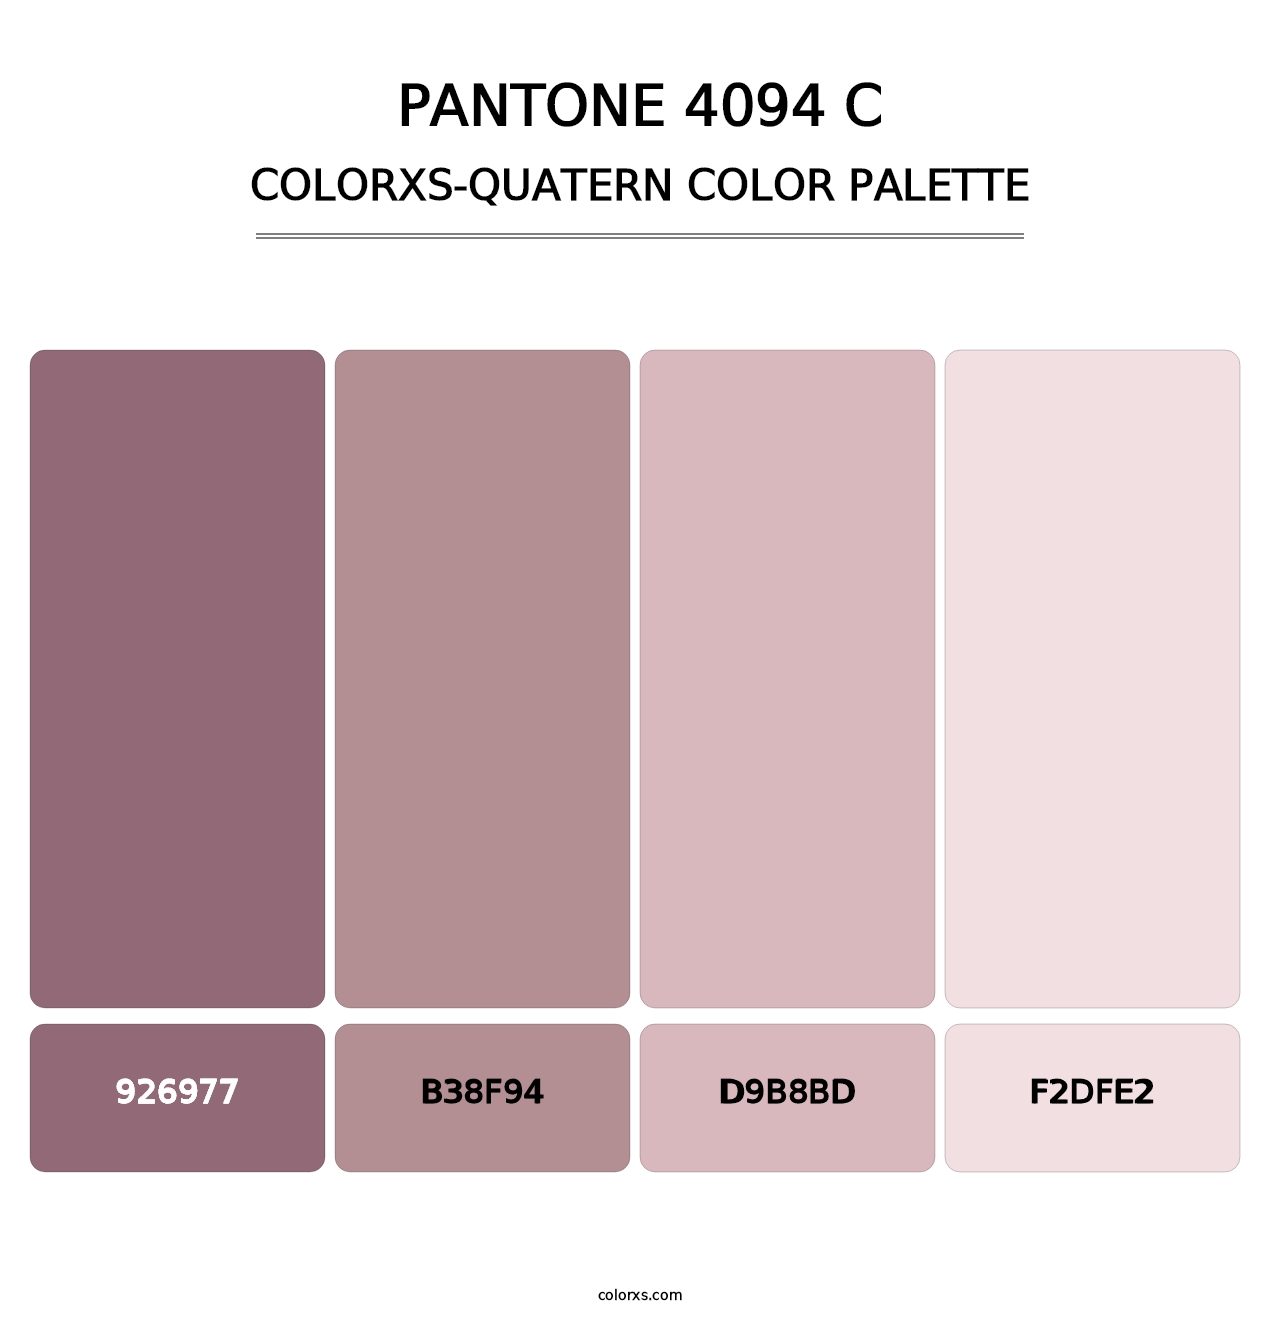 PANTONE 4094 C - Colorxs Quatern Palette